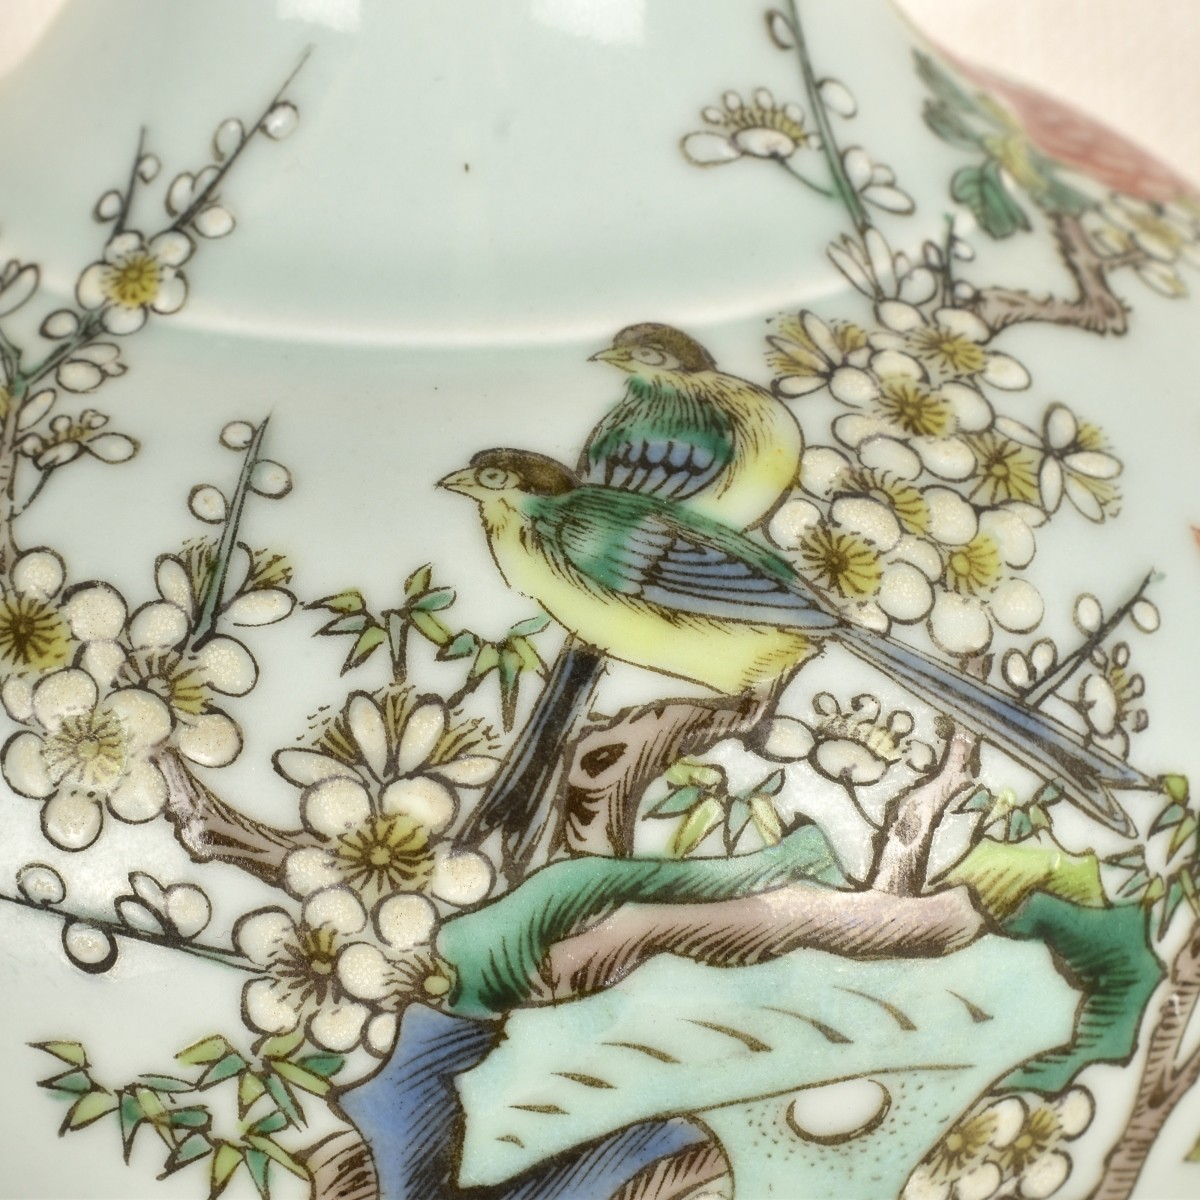 Chinese Porcelain Famille Verte Vase